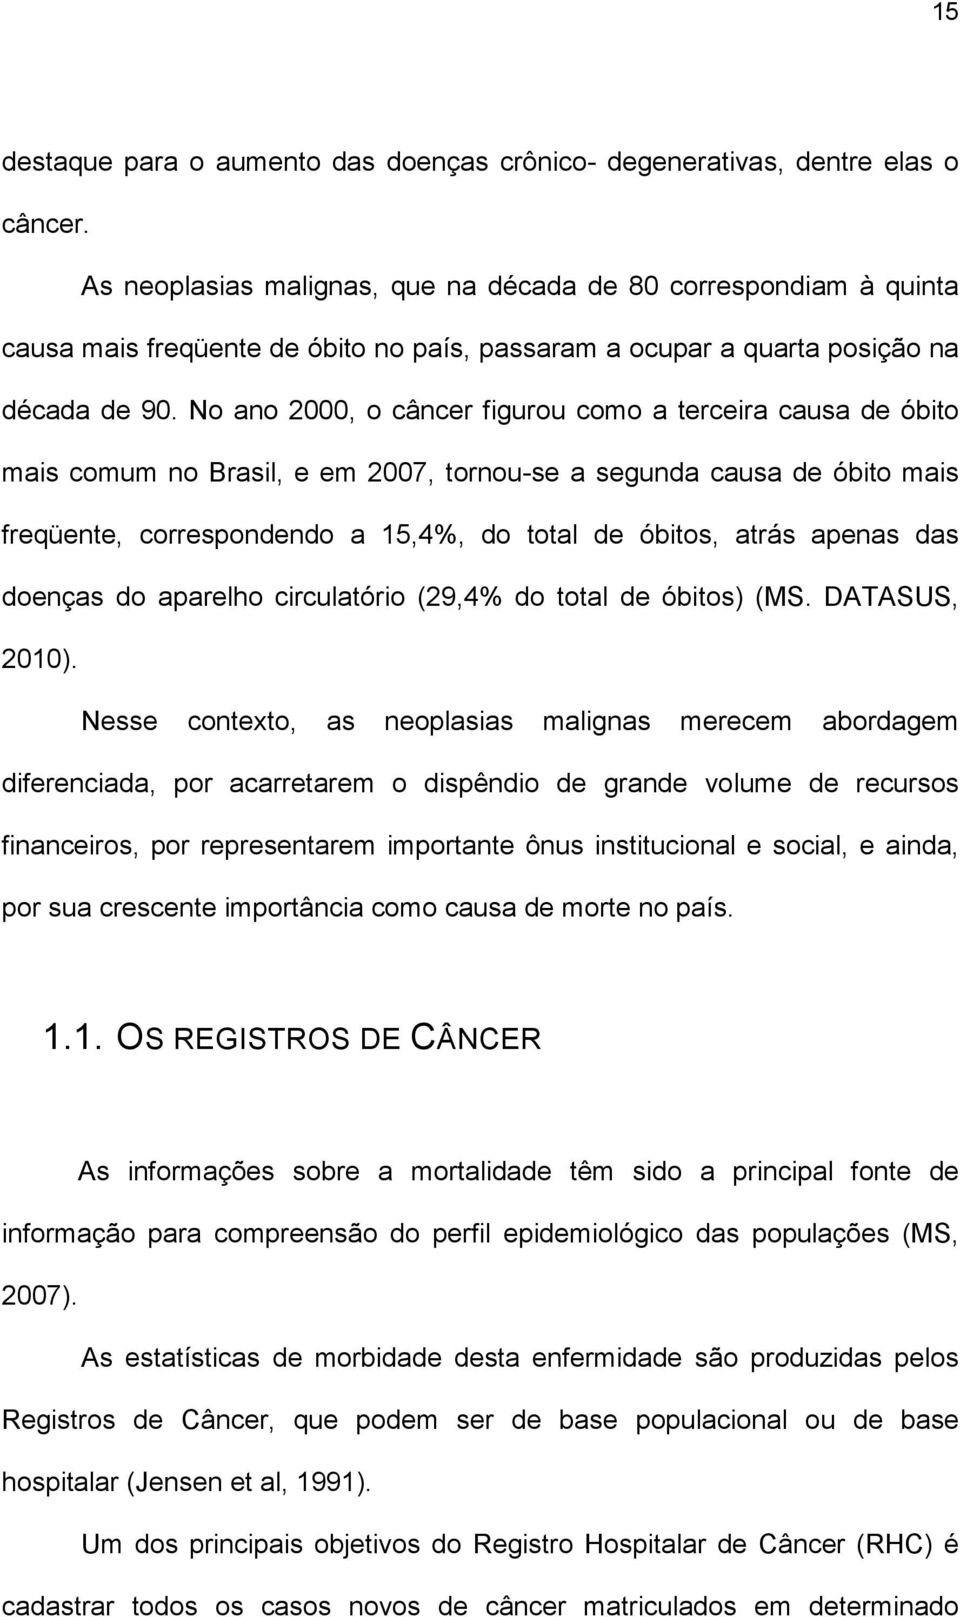 No ano 2000, o câncer figurou como a terceira causa de óbito mais comum no Brasil, e em 2007, tornou-se a segunda causa de óbito mais freqüente, correspondendo a 15,4%, do total de óbitos, atrás